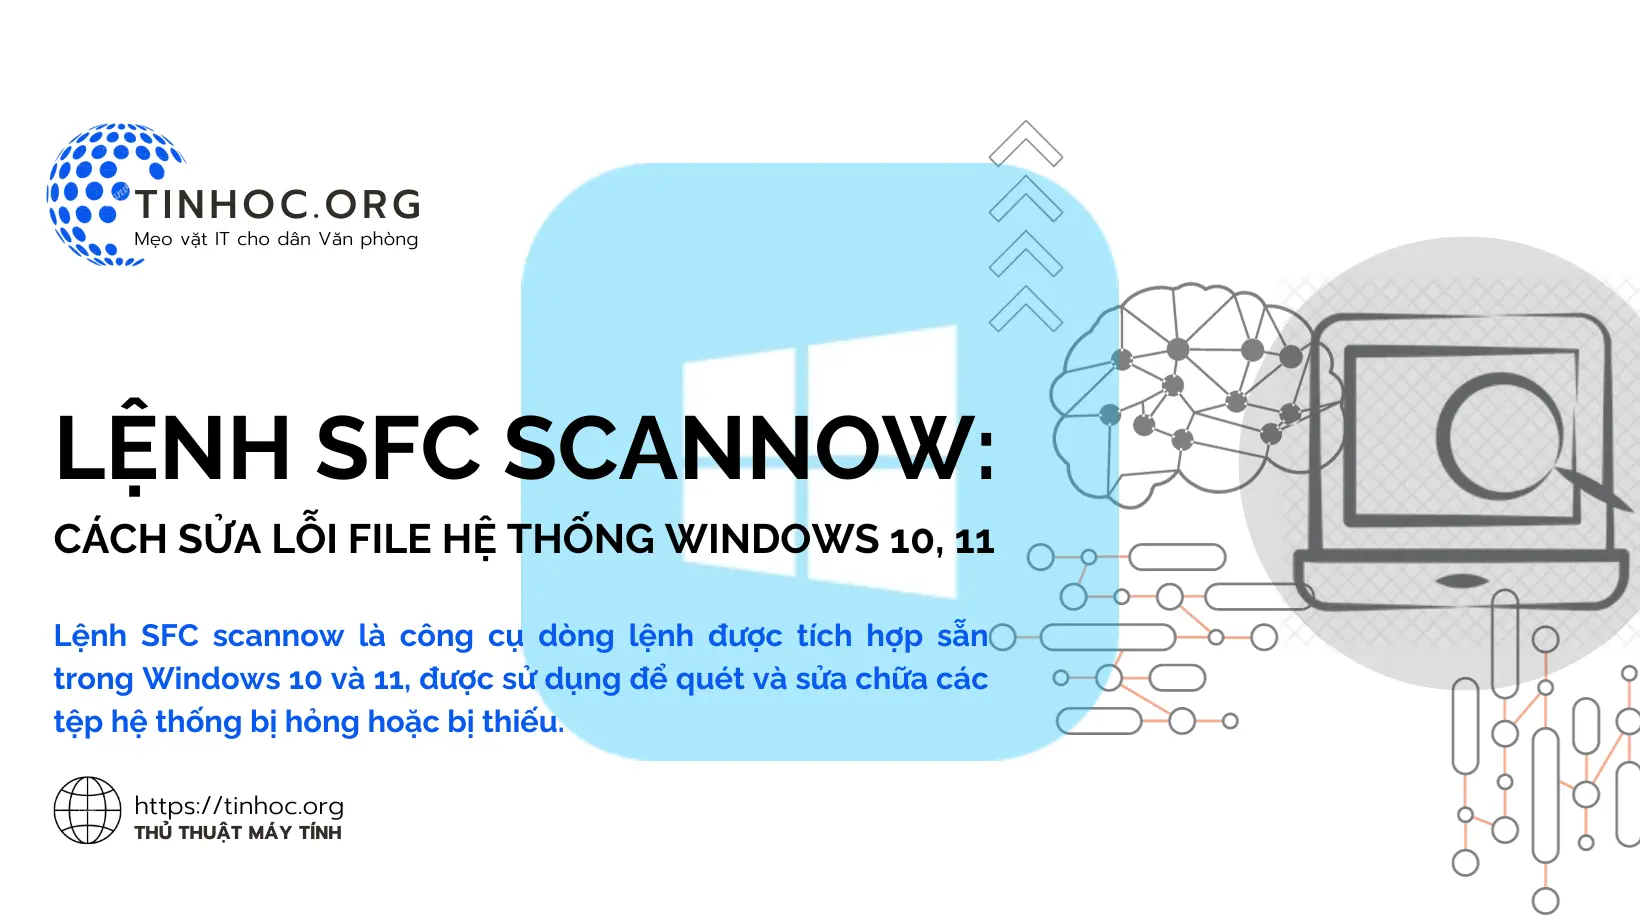 SFC là viết tắt của System File Checker, một công cụ tích hợp sẵn trong hệ điều hành Windows giúp quét và sửa chữa các tệp hệ thống bị hỏng hoặc bị thiếu.